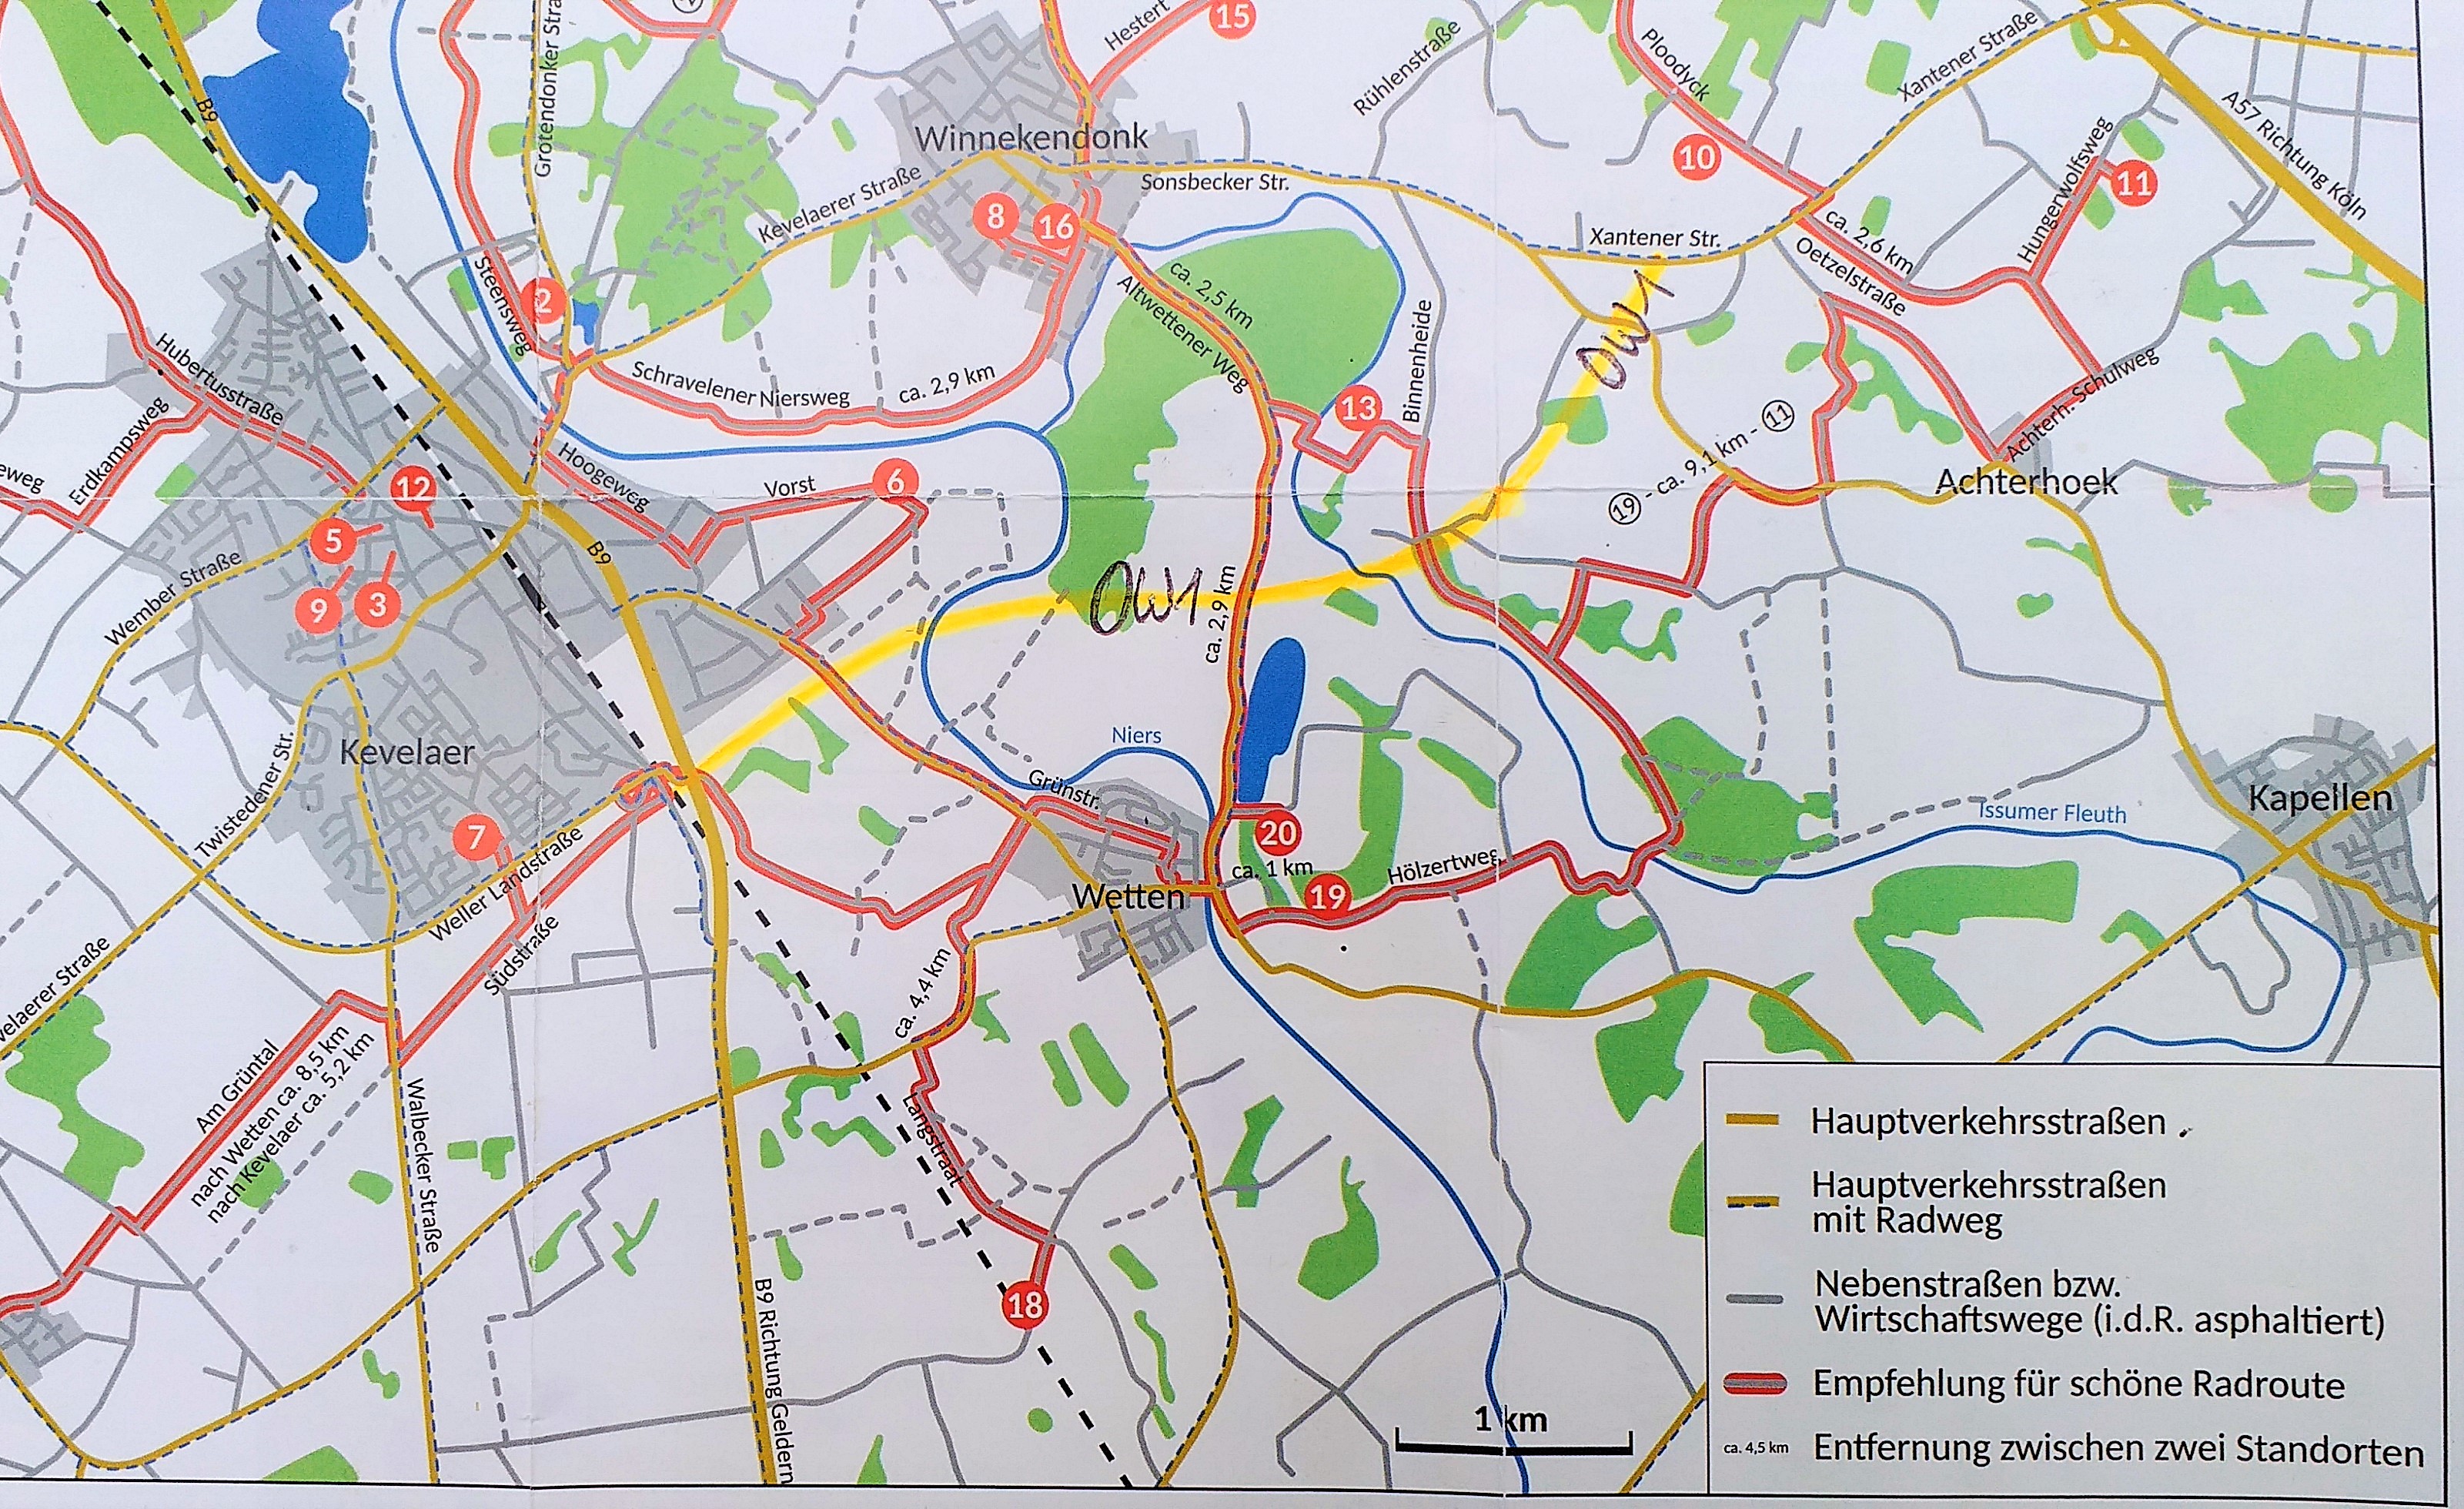 Die rot eingezeichneten Wege sind Teil der Route der Landpartie am Niederrhein 2019